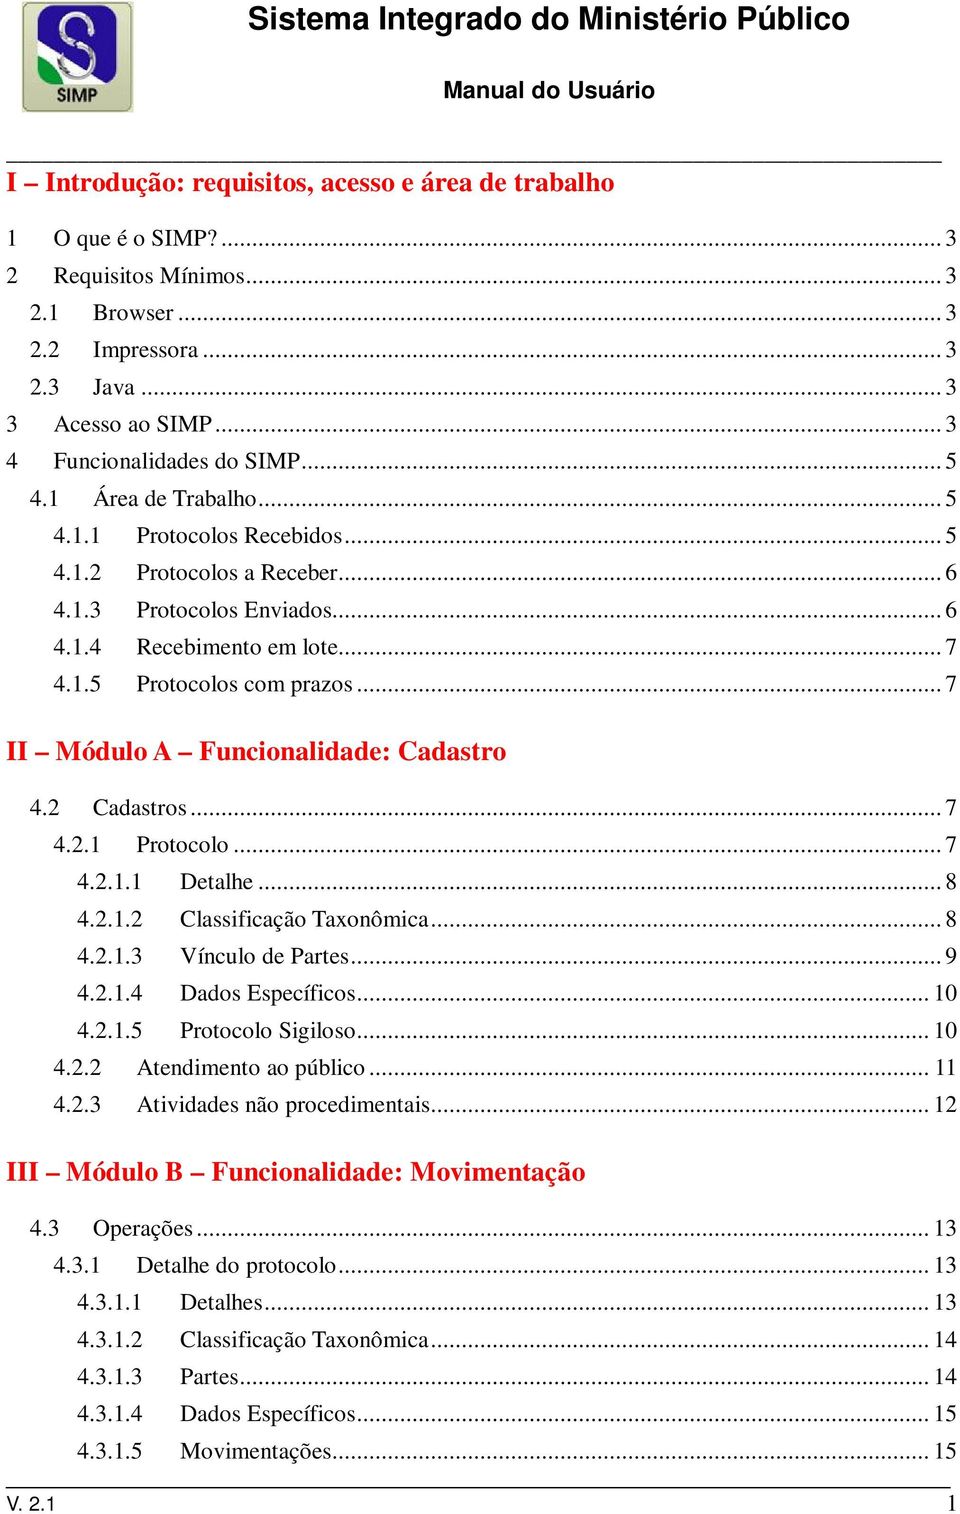 .. 7 II Módulo A Funcionalidade: Cadastro 4.2 Cadastros... 7 4.2.1 Protocolo... 7 4.2.1.1 Detalhe... 8 4.2.1.2 Classificação Taxonômica... 8 4.2.1.3 Vínculo de Partes... 9 4.2.1.4 Dados Específicos.